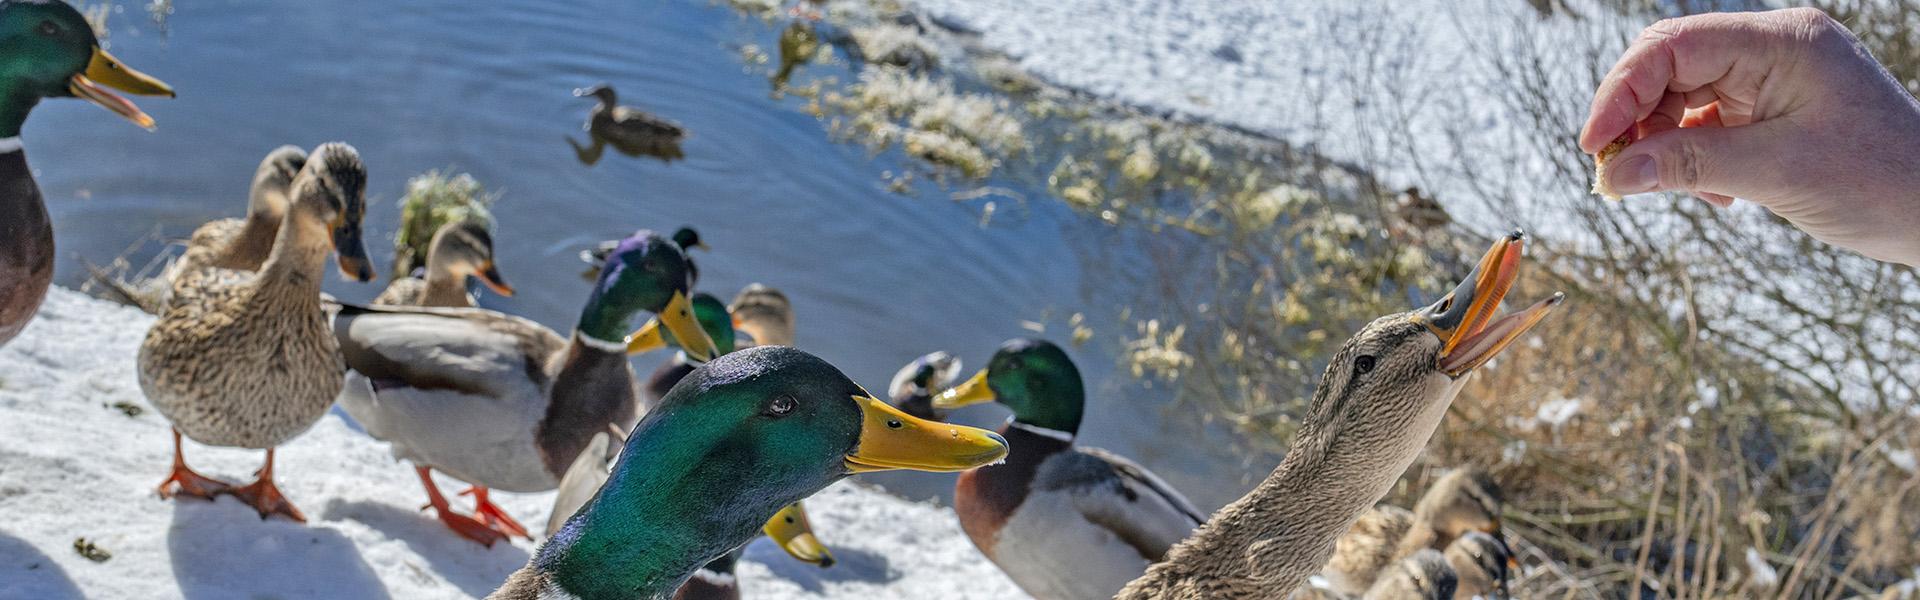 Feeding ducks on a snowy day